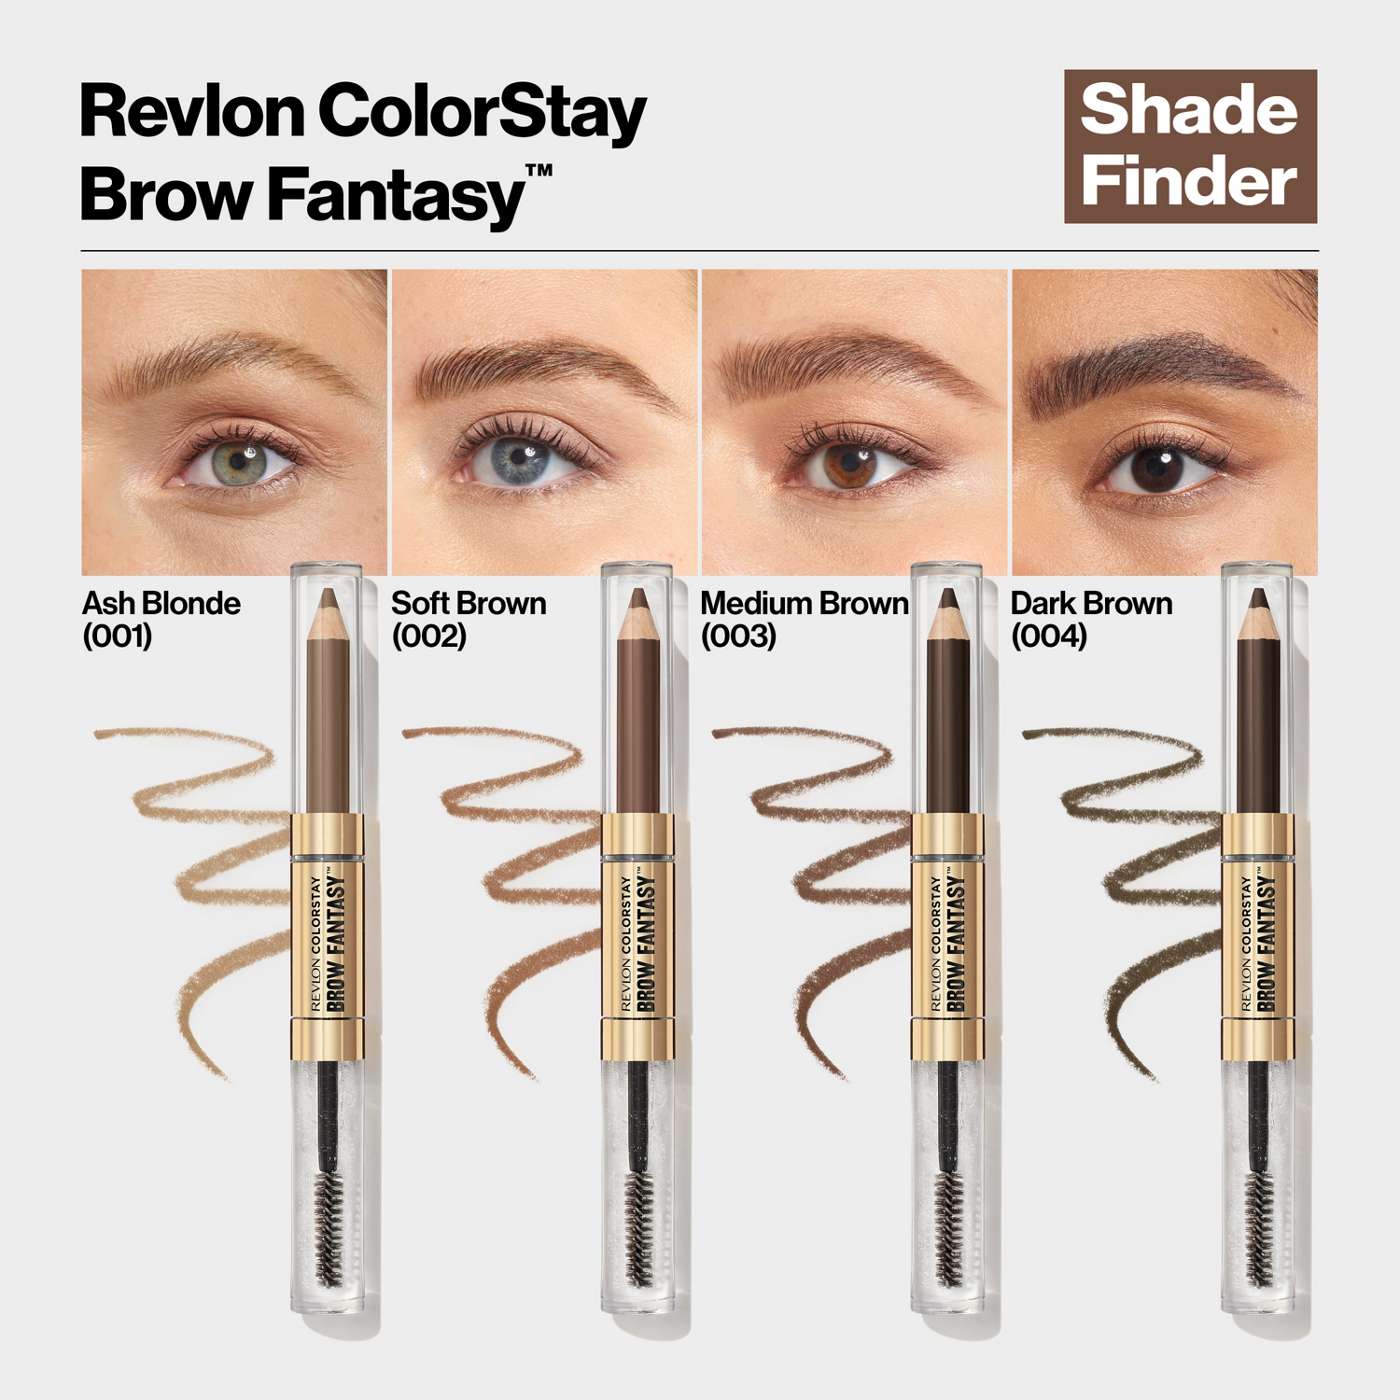 Revlon ColorStay Brow Fantasy Pencil & Gel - Medium Brown; image 5 of 5